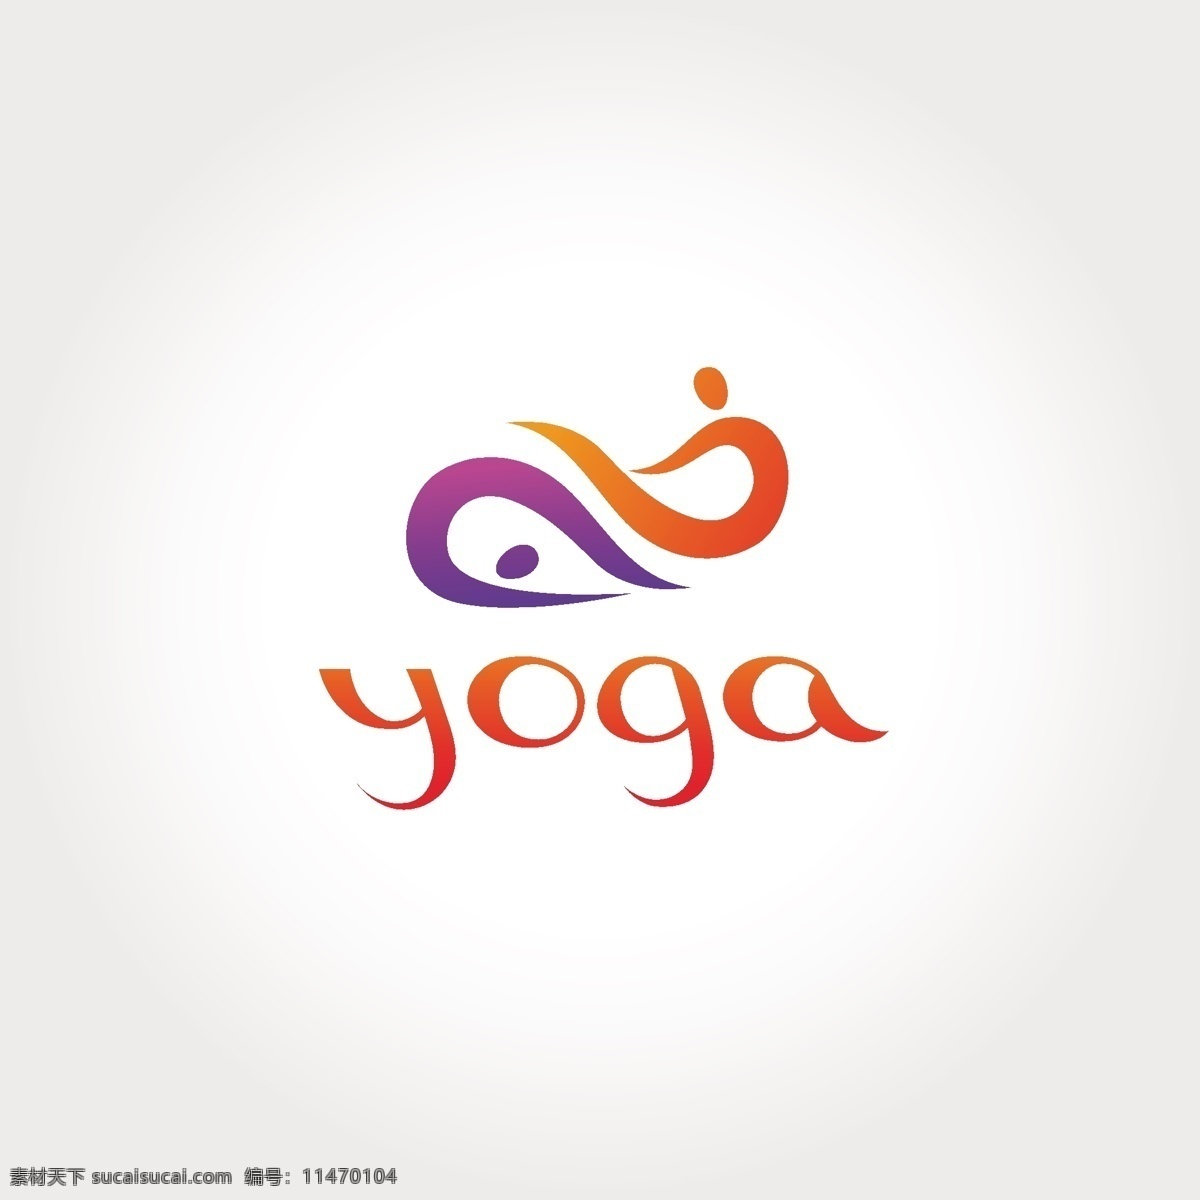 瑜伽 商标 矢量图 商标矢量图 瑜伽商标 企业商标 公司商标 商标矢量 logo设计 企业logo 标志 logo 矢量 yoga 矢量素材 矢量图片 eps格式